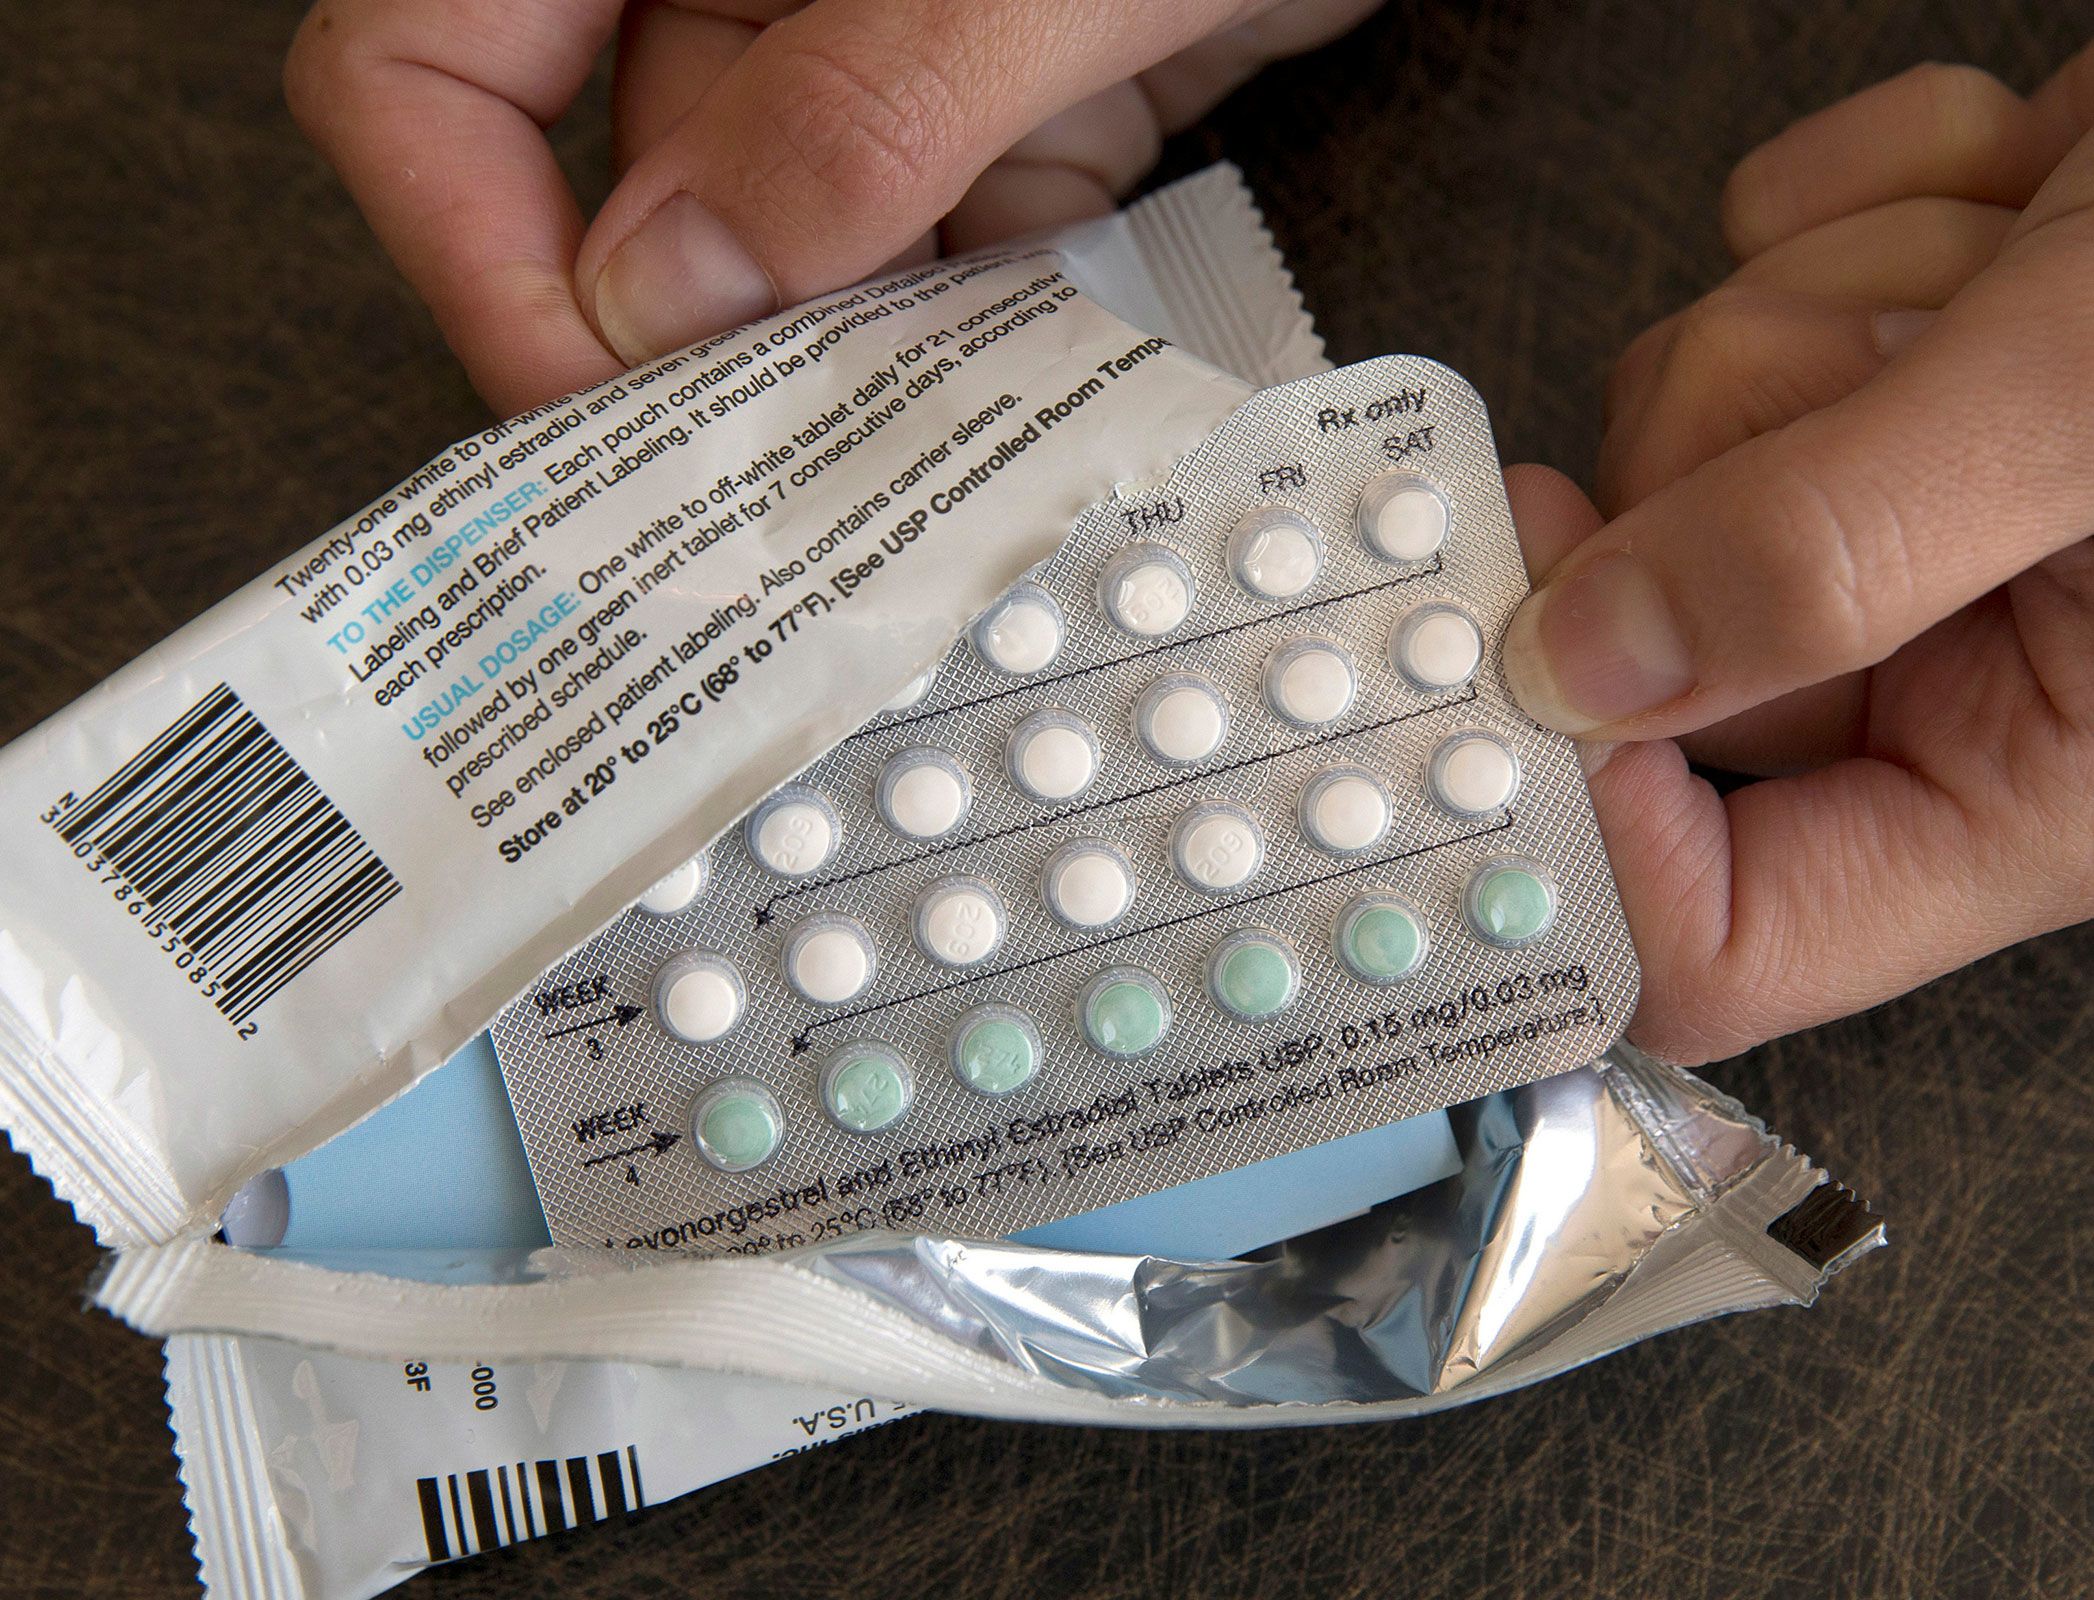 Senate Republicans Block Bill to Establish 'Right to Contraception'